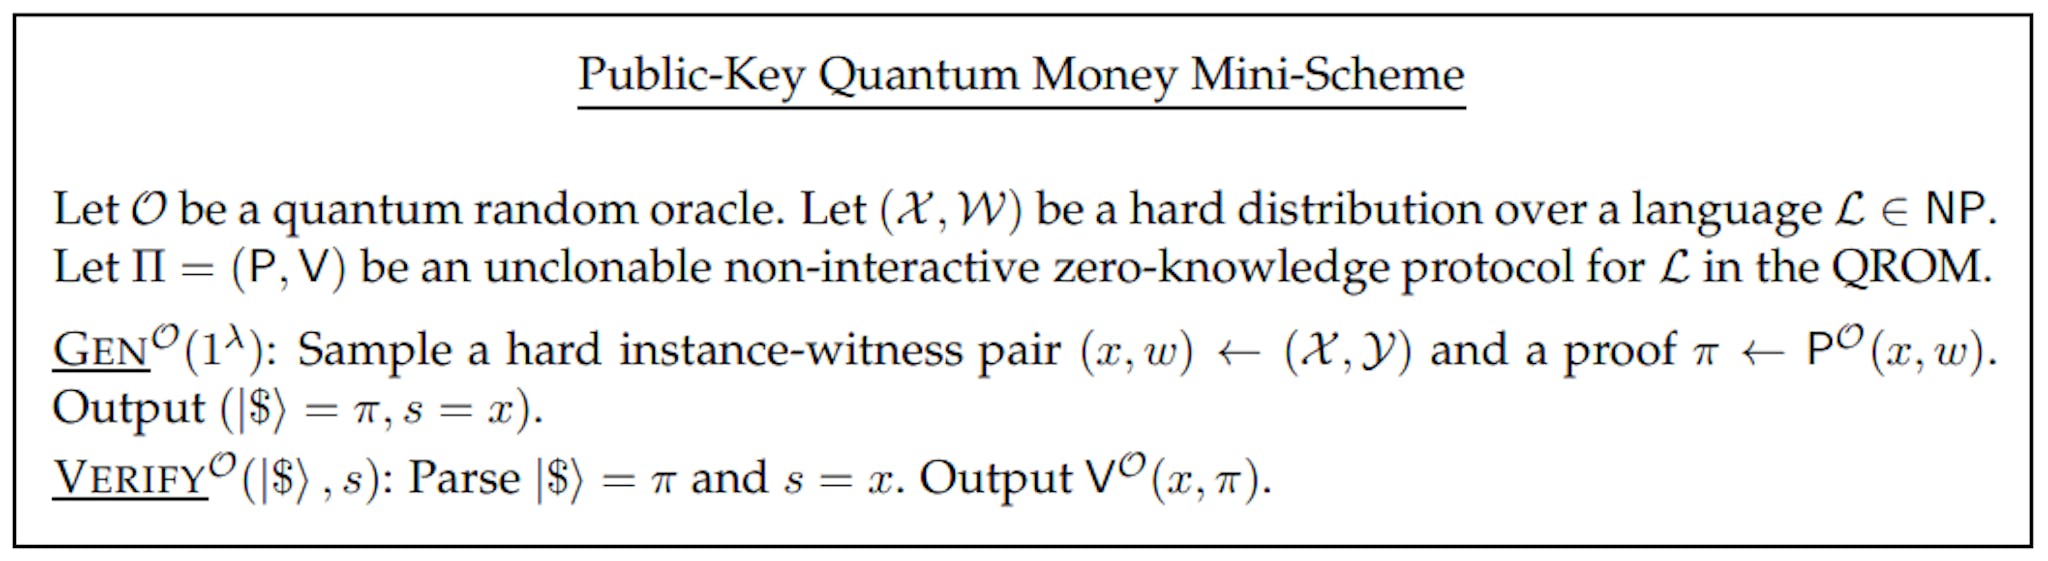 Abbildung 4: Quantengeld-Minischema mit öffentlichem Schlüssel aus einem nicht klonbaren, nicht interaktiven Quantenprotokoll